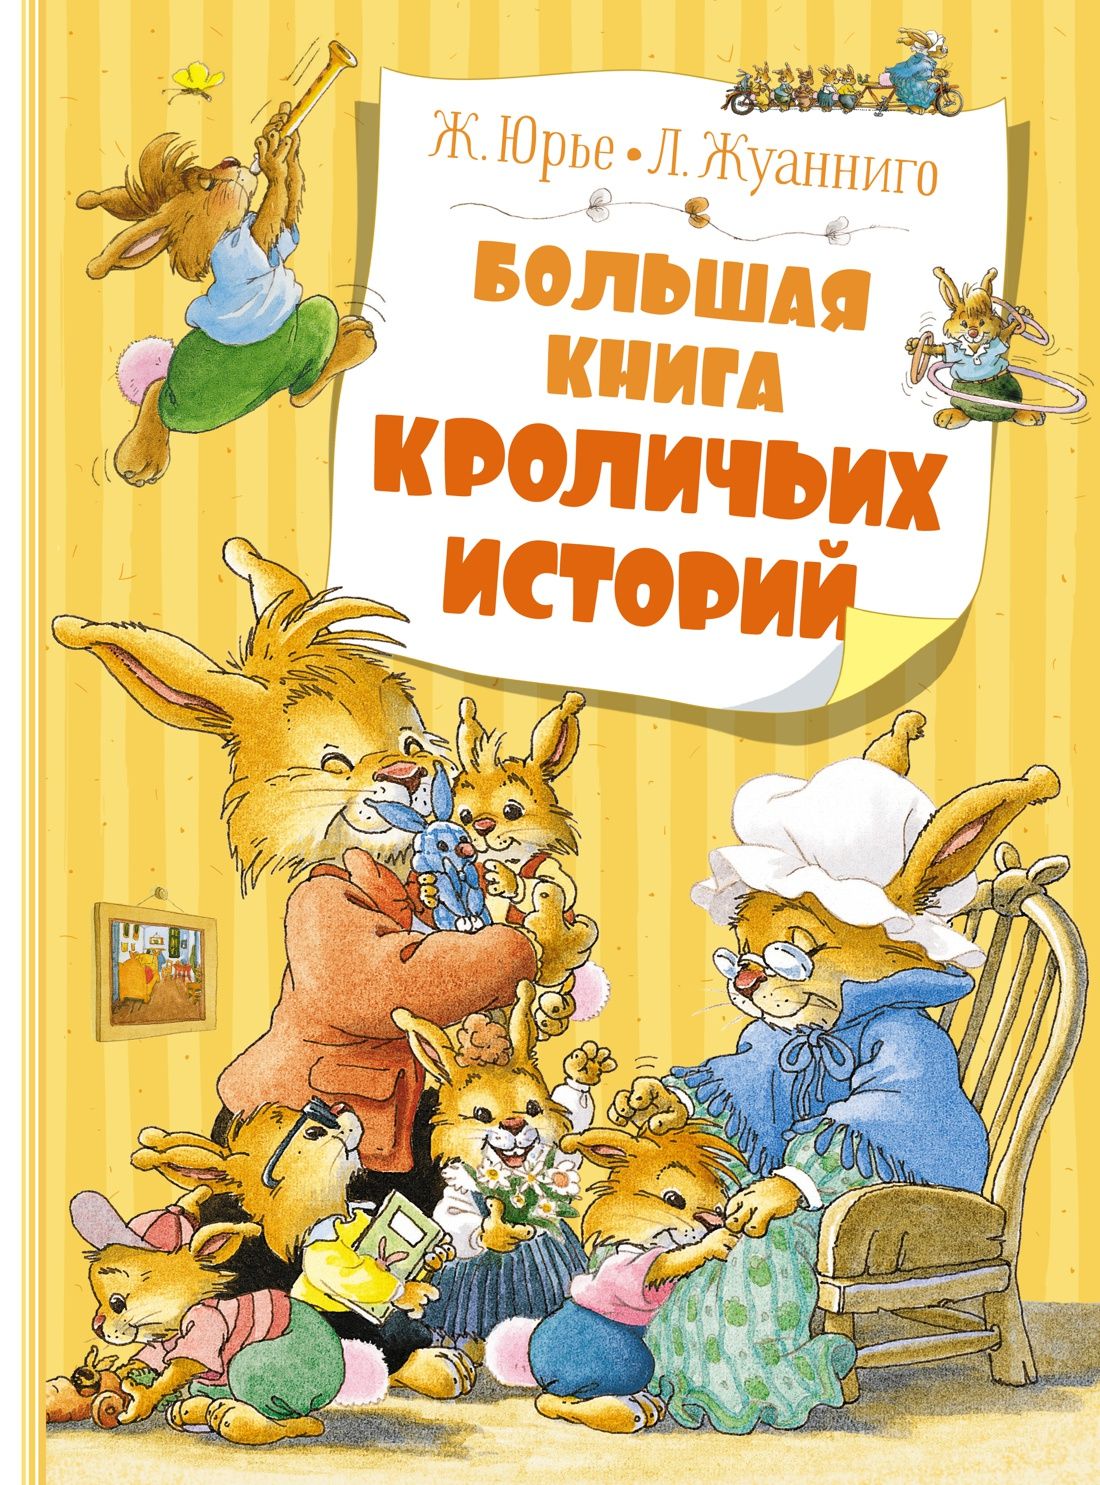 Юрье Ж. - Большая книга кроличьих историй